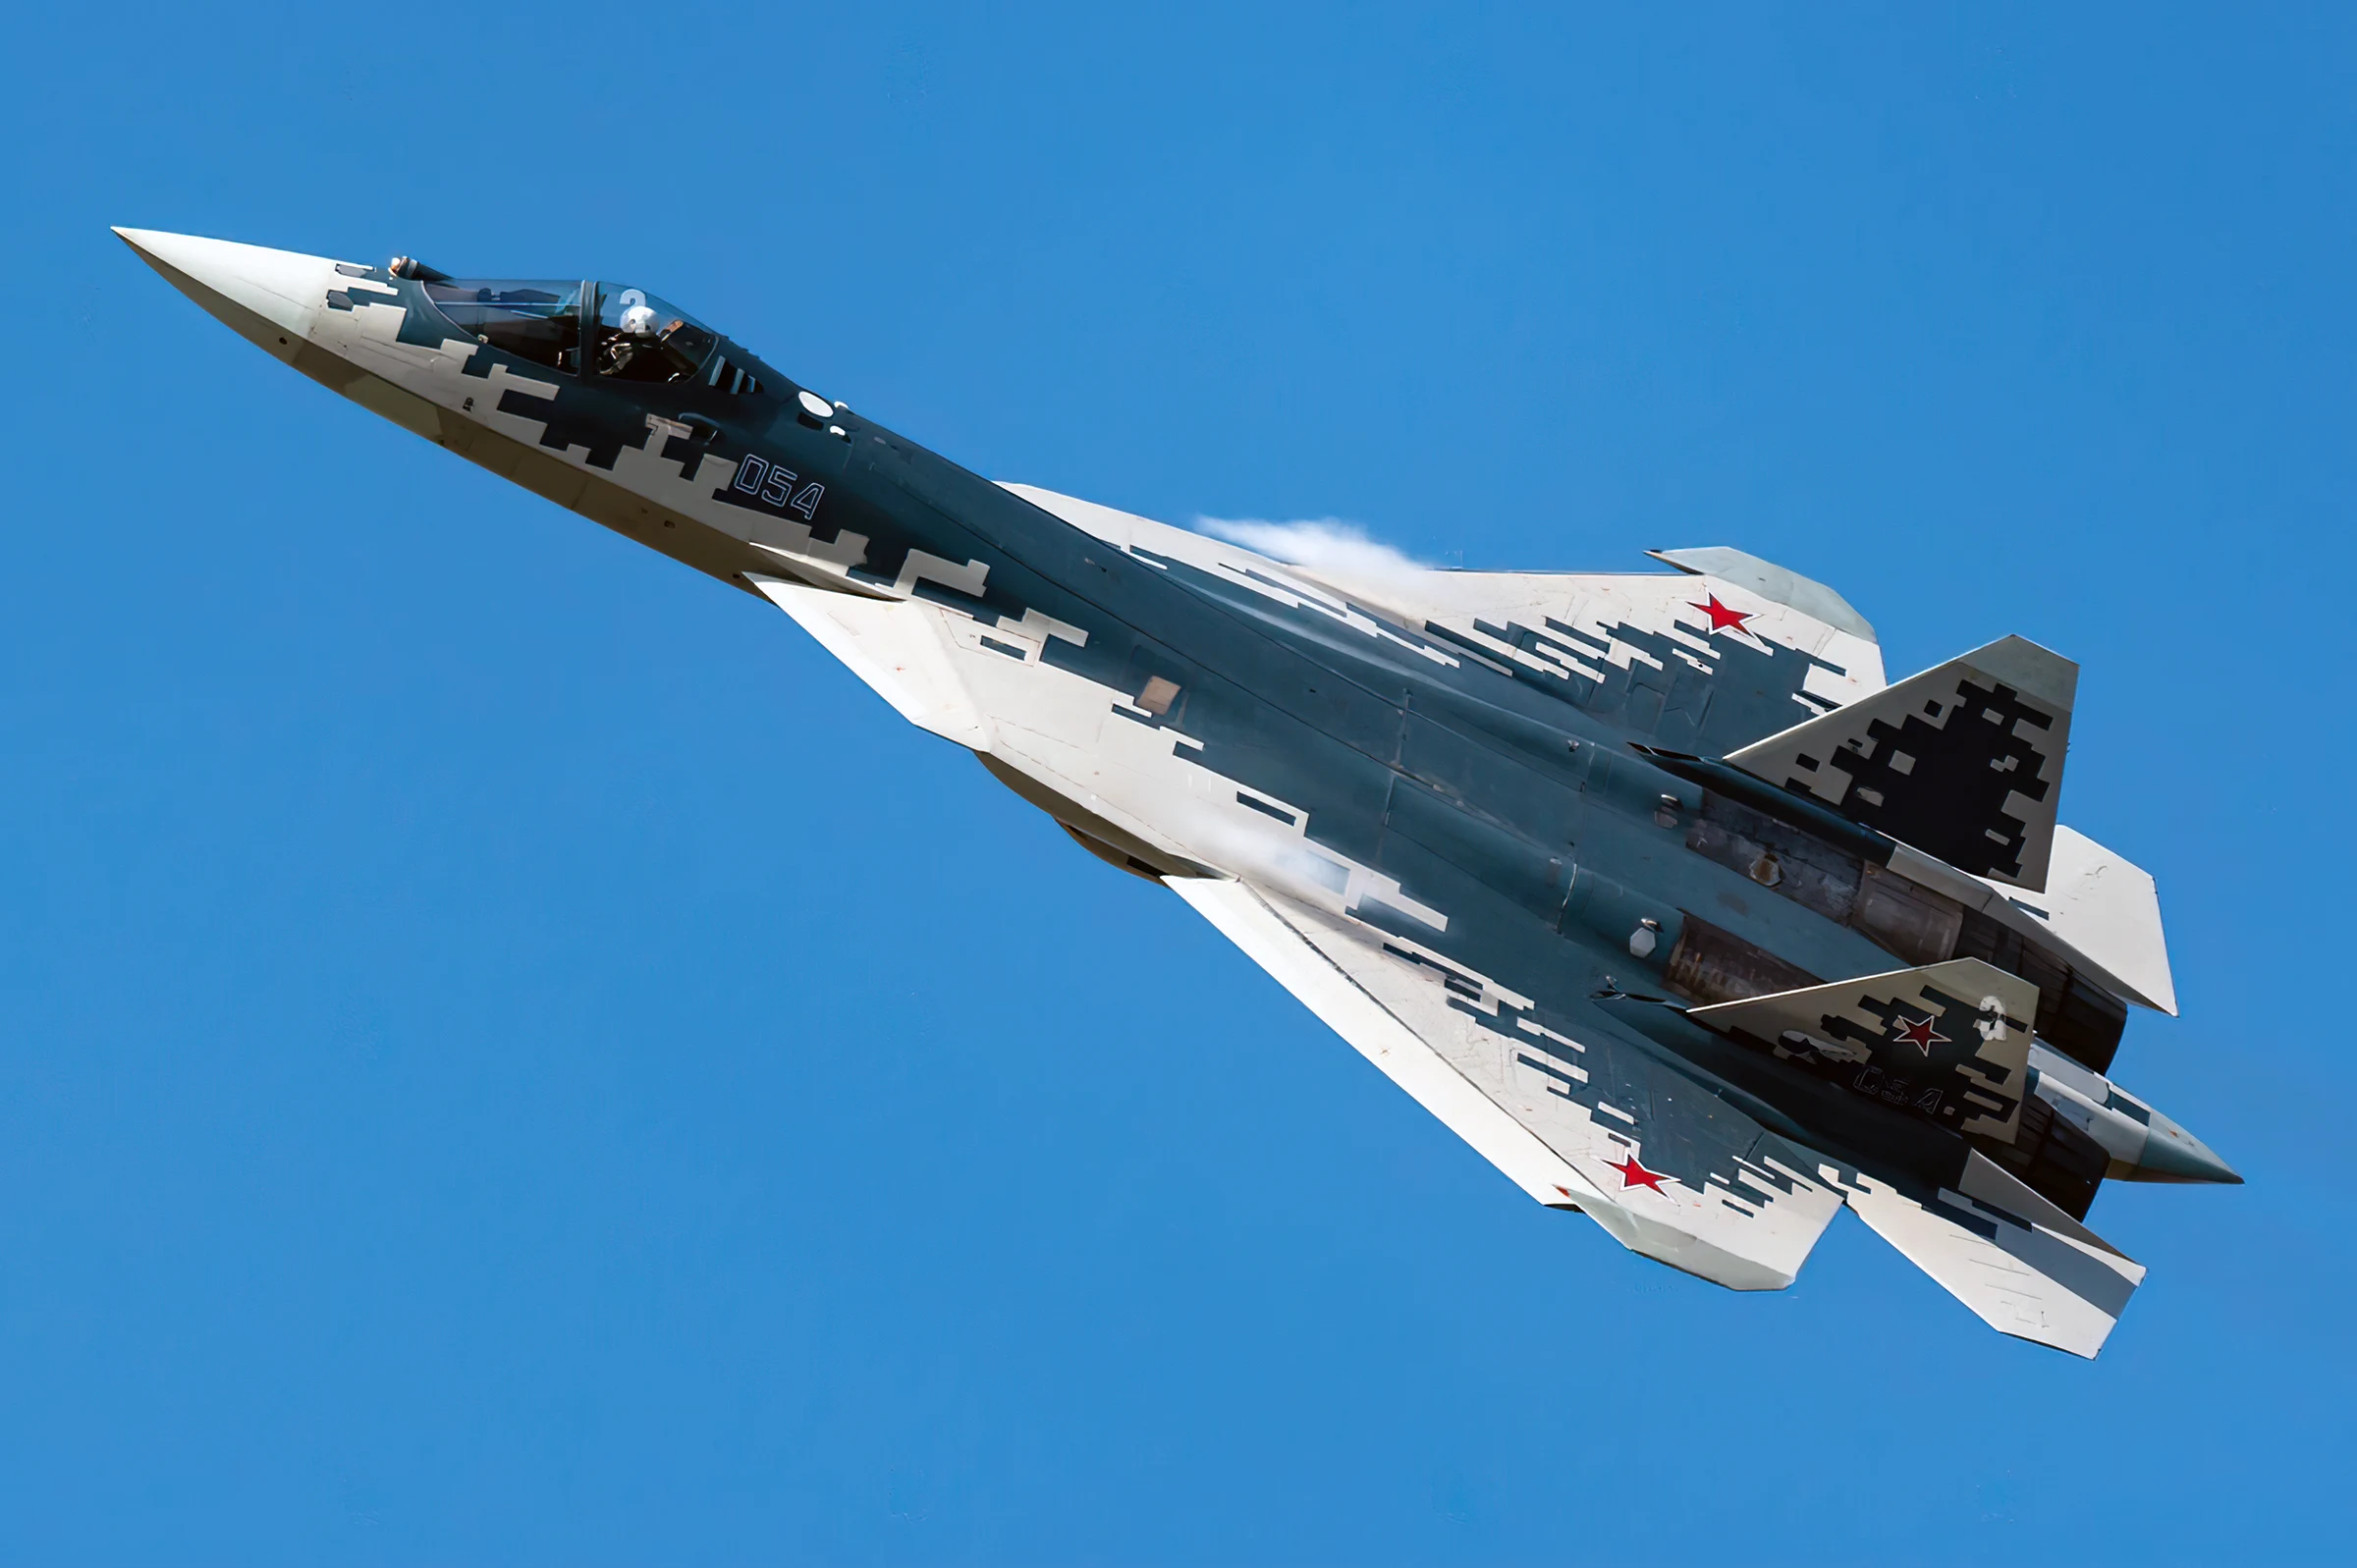 El Su-57 ruso reforzado contra interferencias y escuchas